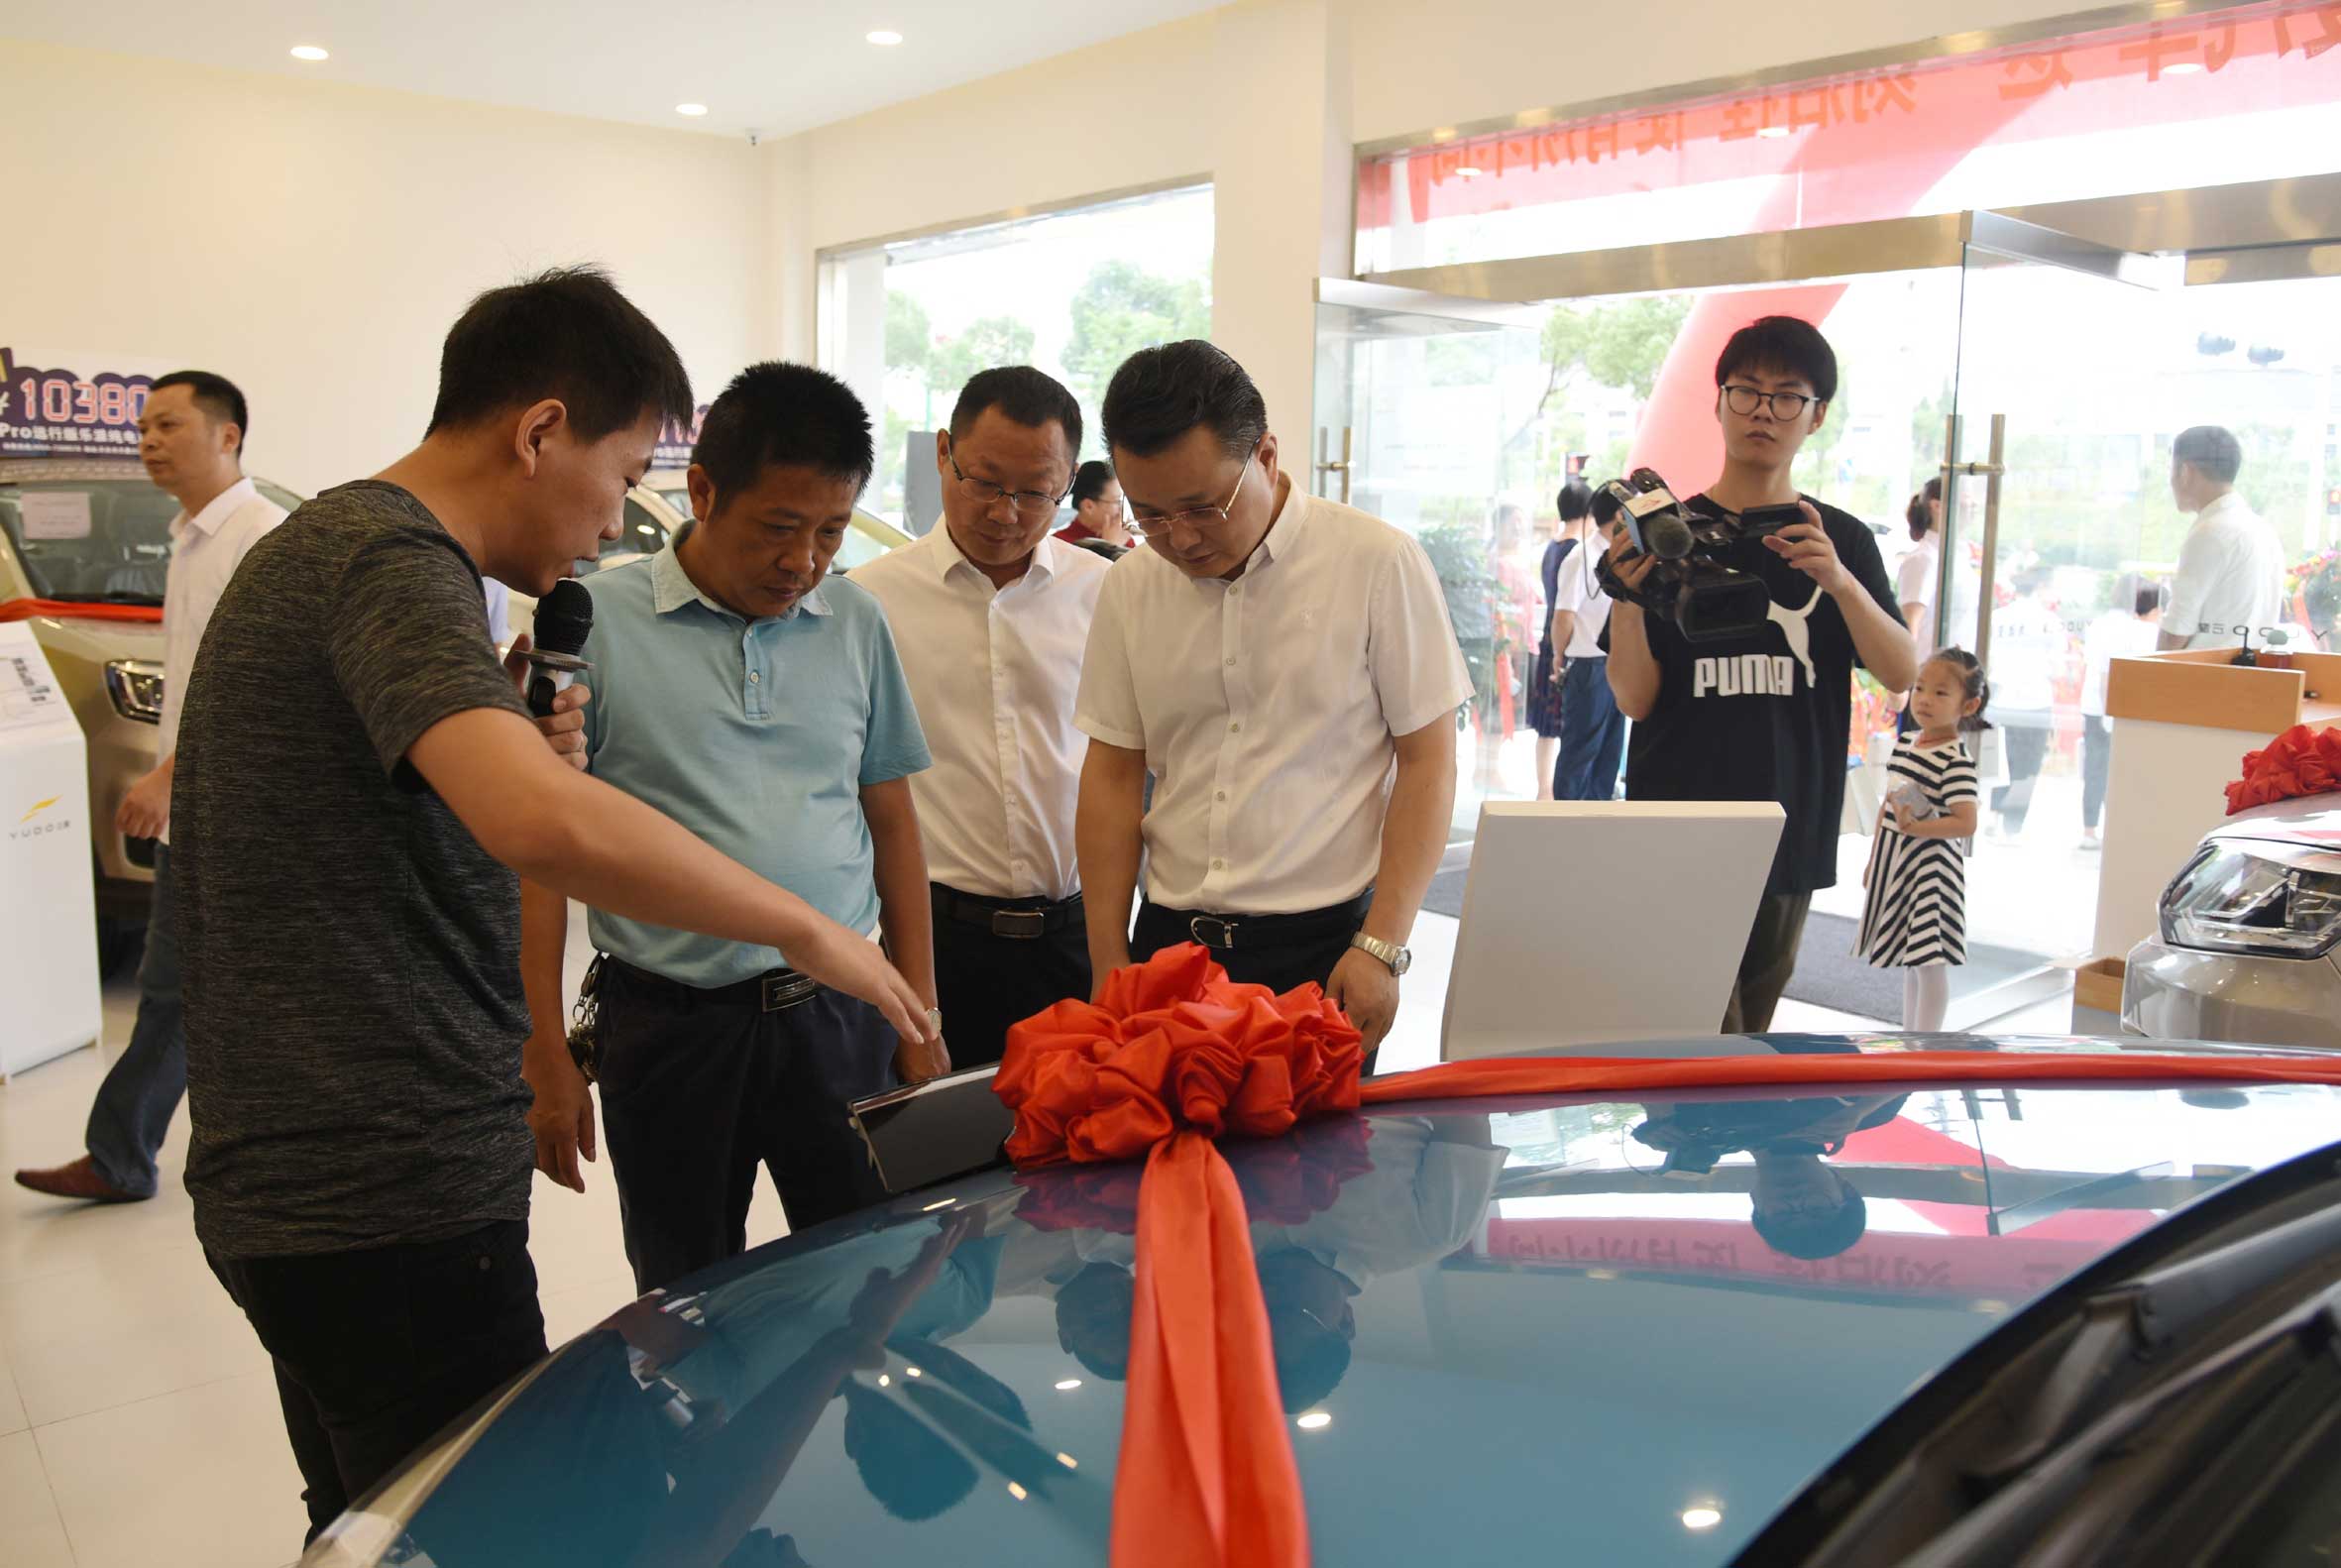 天康恒源汽车工业与杜云新动力汽车携手举行开幕奖励活动
